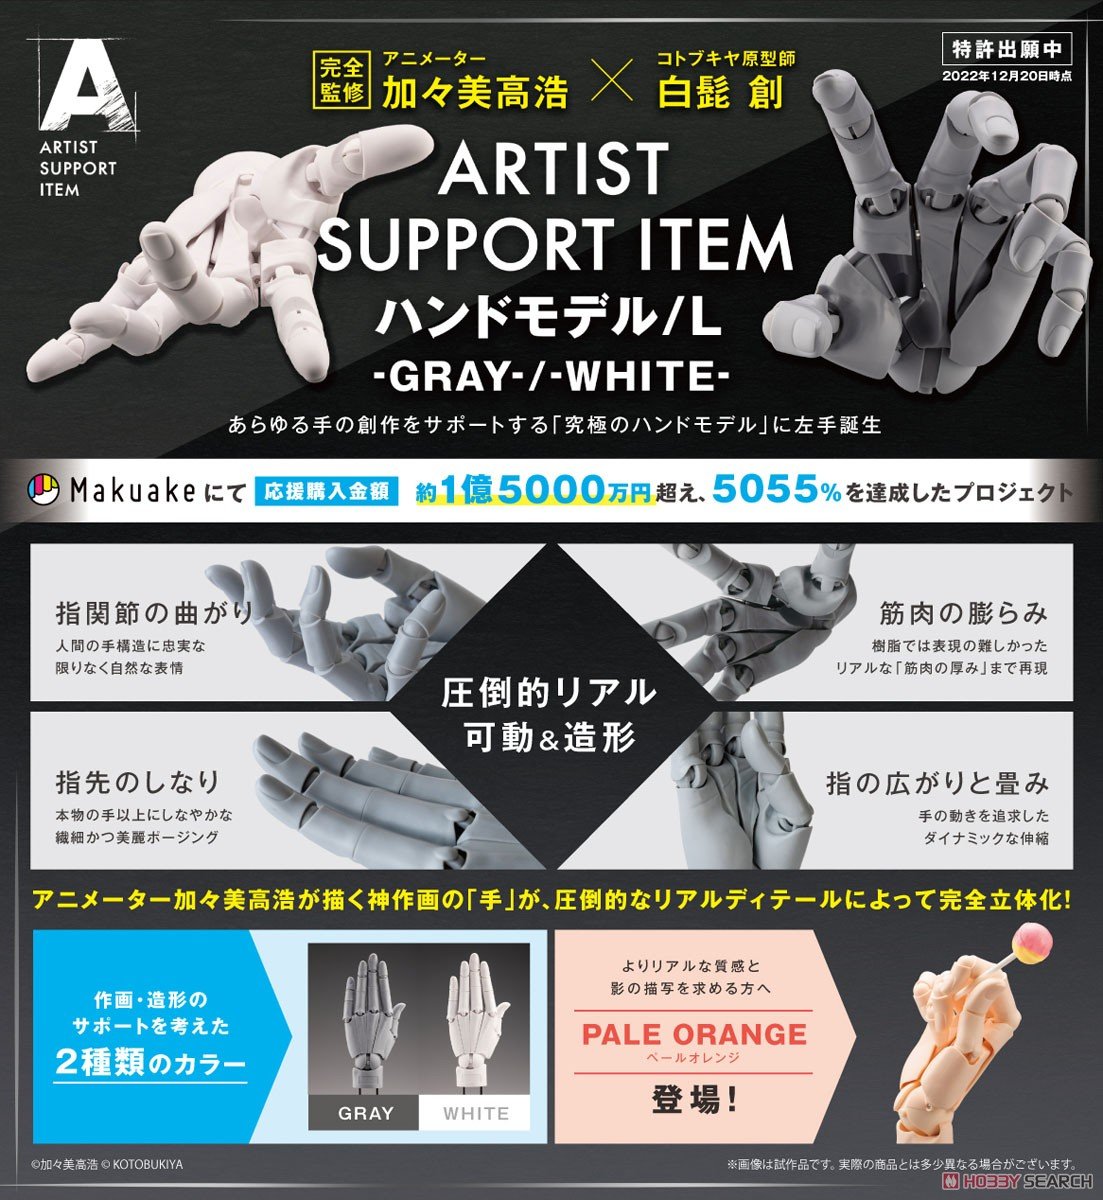 ARTIST SUPPORT ITEM『加々美高浩 ハンドモデル/L -GRAY-』1/1 アクションフィギュア-012